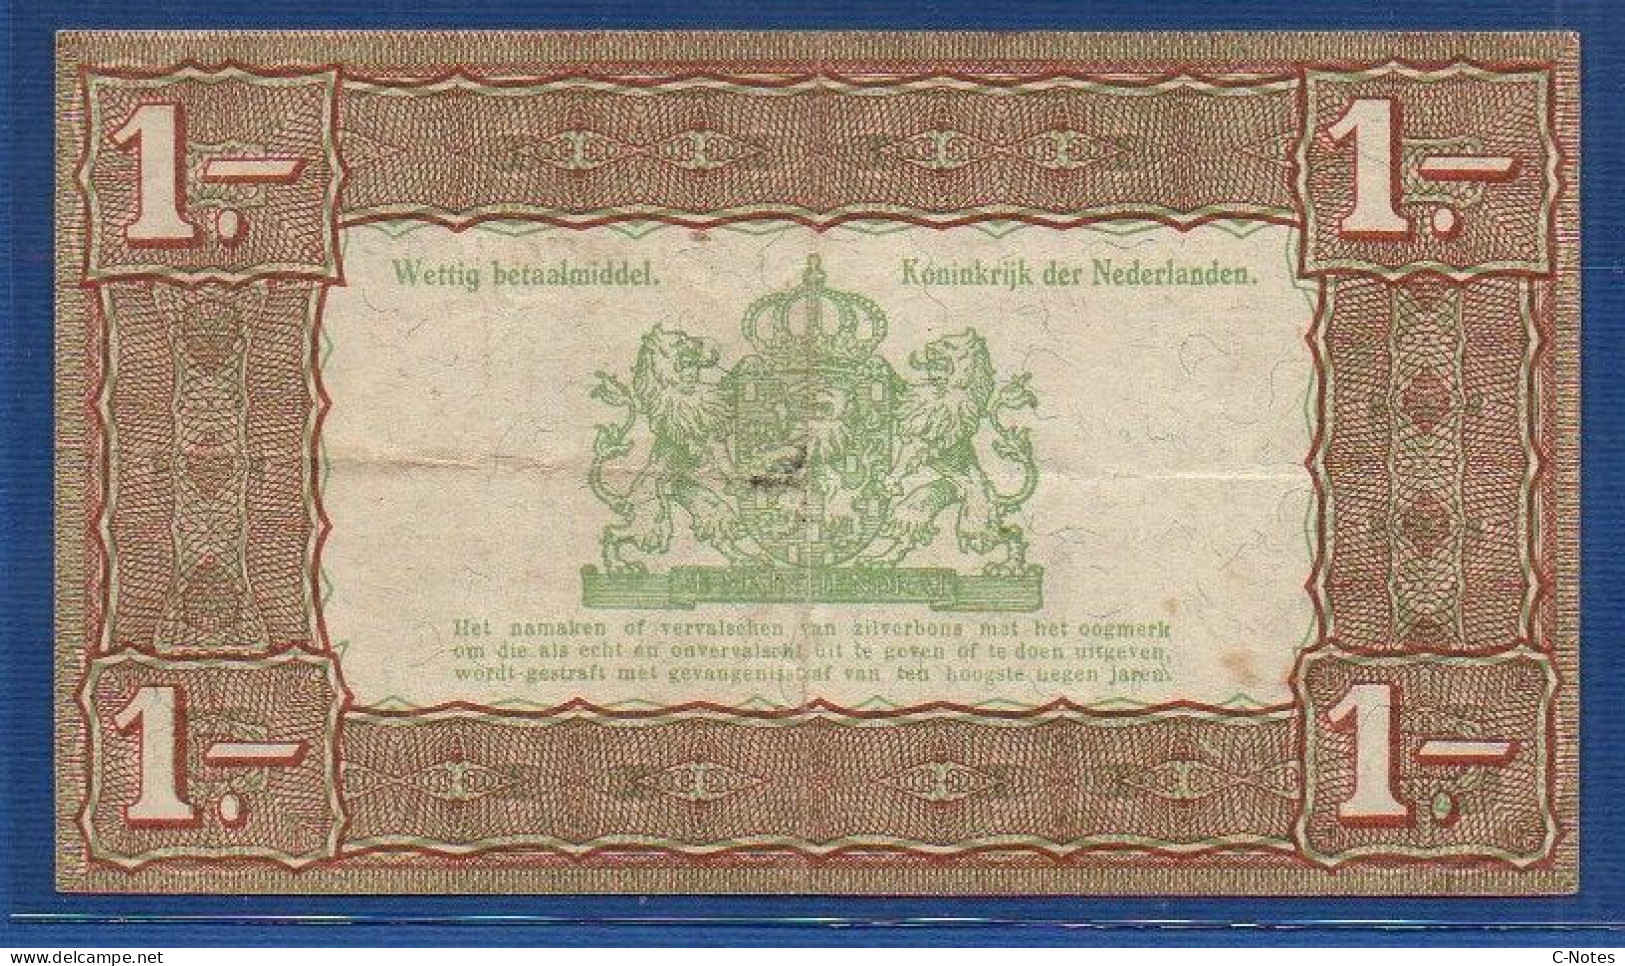 NETHERLANDS  - P.61 – 1 Gulden 1943  AVF, S/n CT 704659 - 1 Gulden